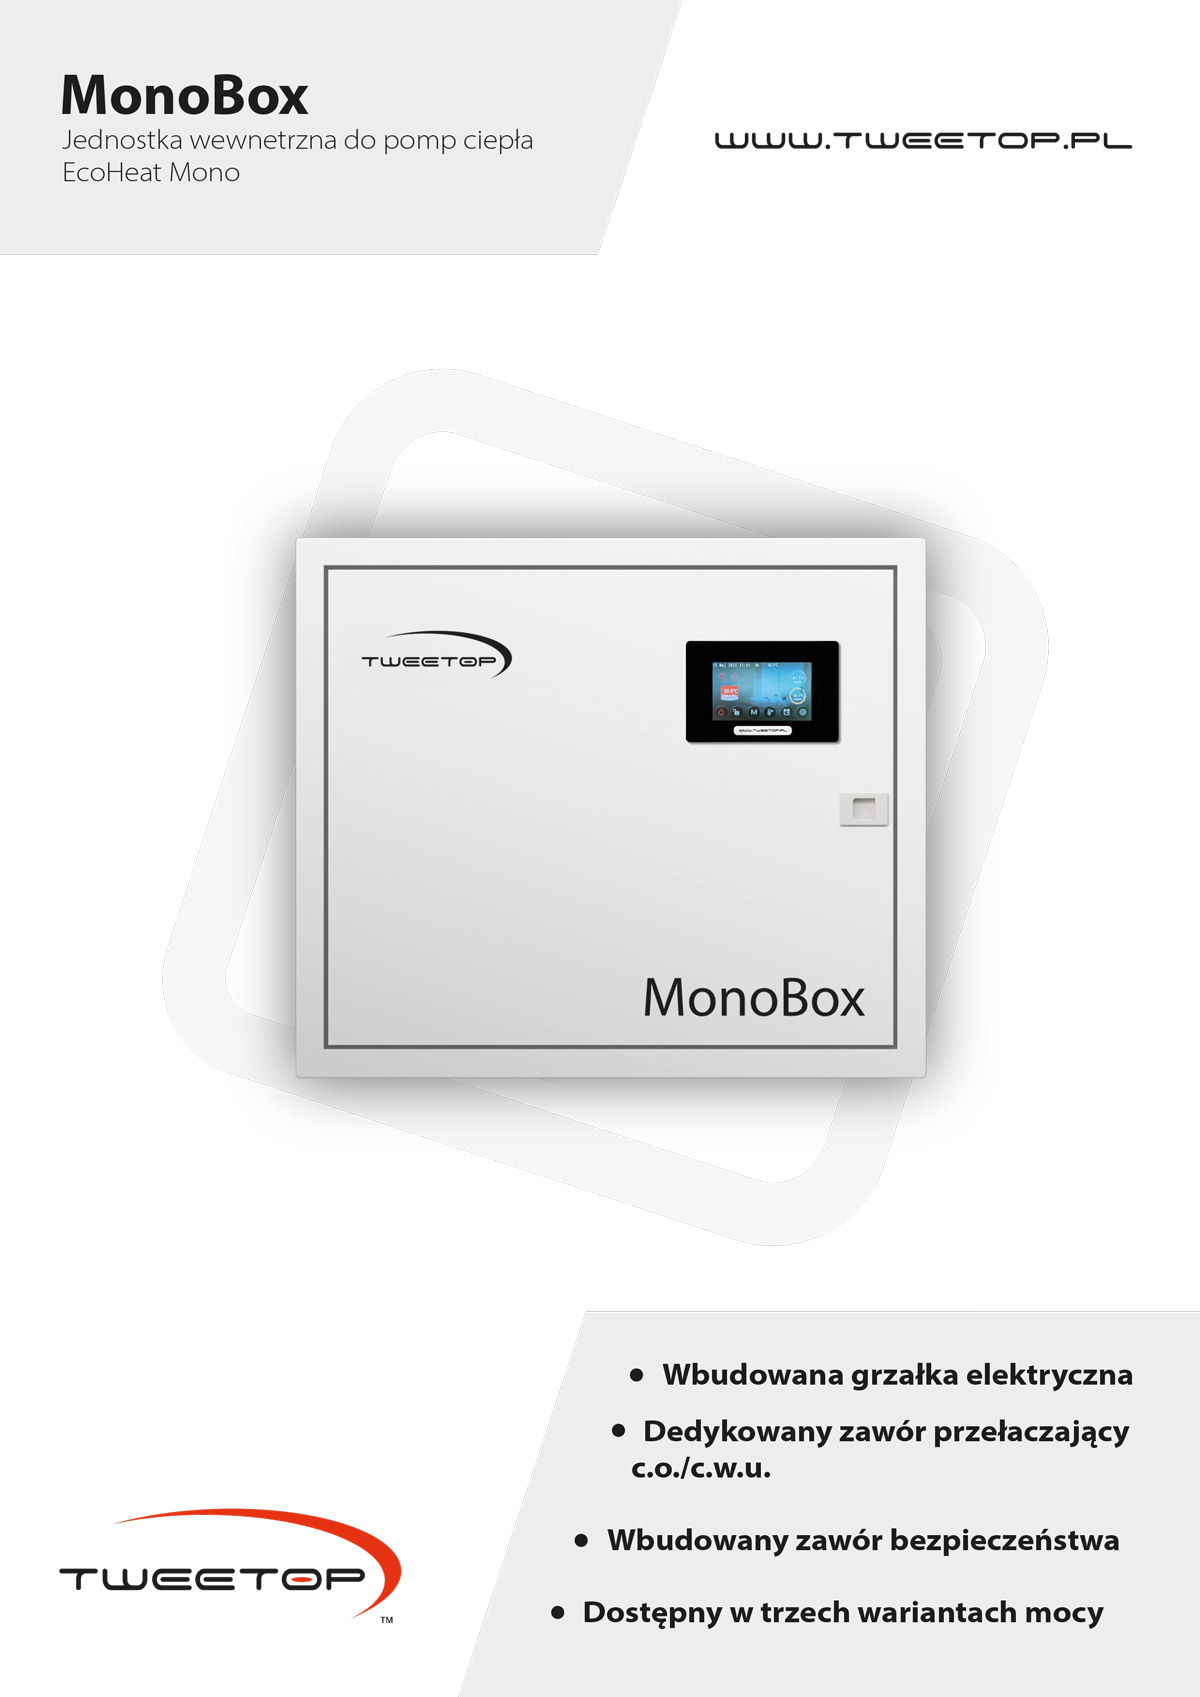 MonoBox - jednostka wewnętrzna do pomp ciepła EcoHeat Mono